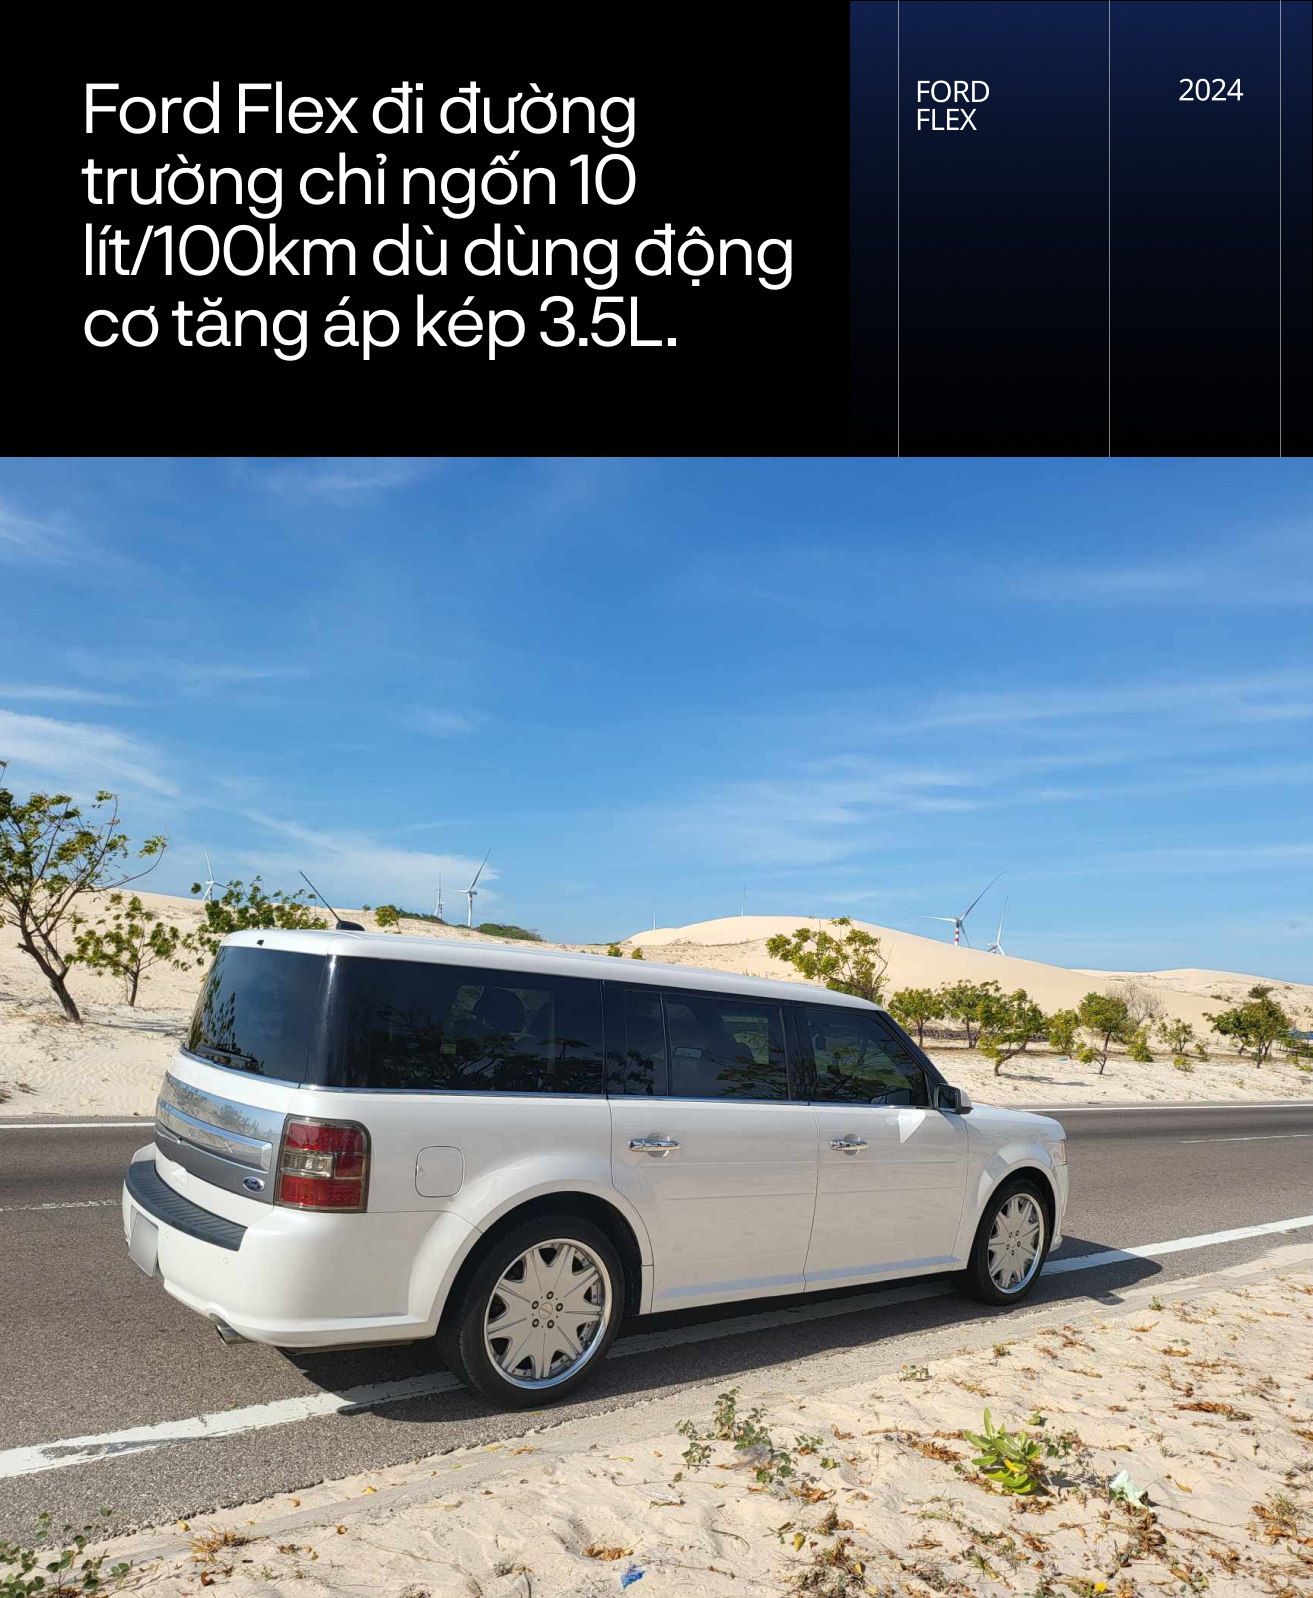 Chủ xe Ford Flex hàng hiếm tại Việt Nam: 'Đáng chơi vì nhiều phụ tùng dùng chung với Explorer, đi 100 km chỉ tốn 10 lít xăng'